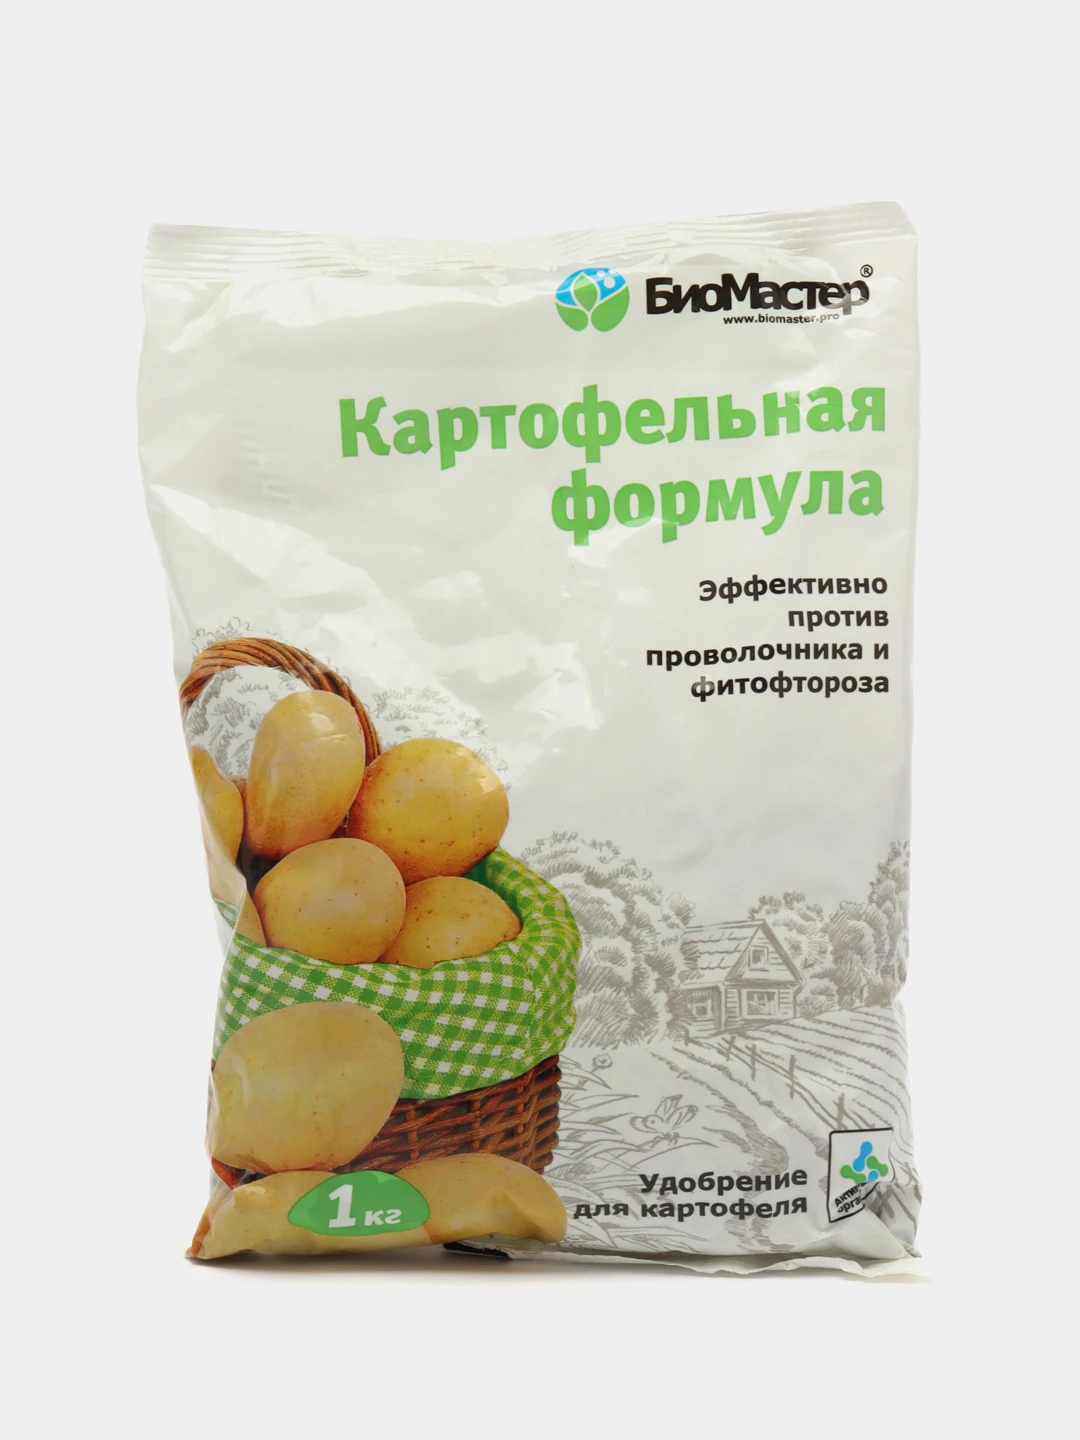 Картофельная формула удобрение. Удобрение картофельная формула состав. БИОМАСТЕР картофельная формула реклама удобрения.